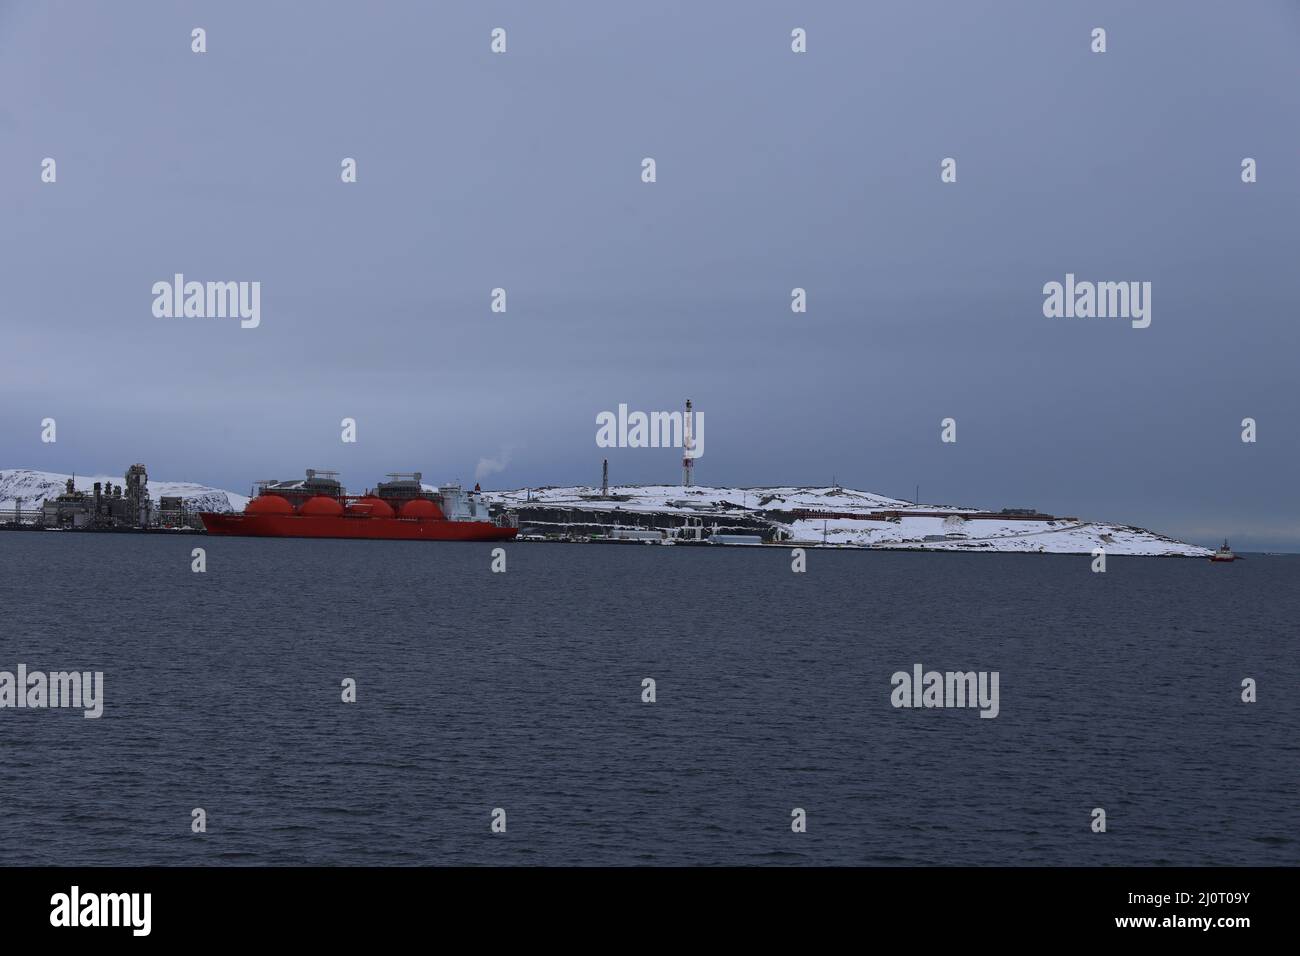 Vor Hammerfest, Norwegen, wird auf der Insel Melkoya Erdgas aus dem Schneewittchenfeld verflüssigt und auf Spezialschiffen nach Spanien und Nordamerika transportiert. Die Anlage wird von Equinor ASA (vormals Statoil) betrieben. Stock Photo